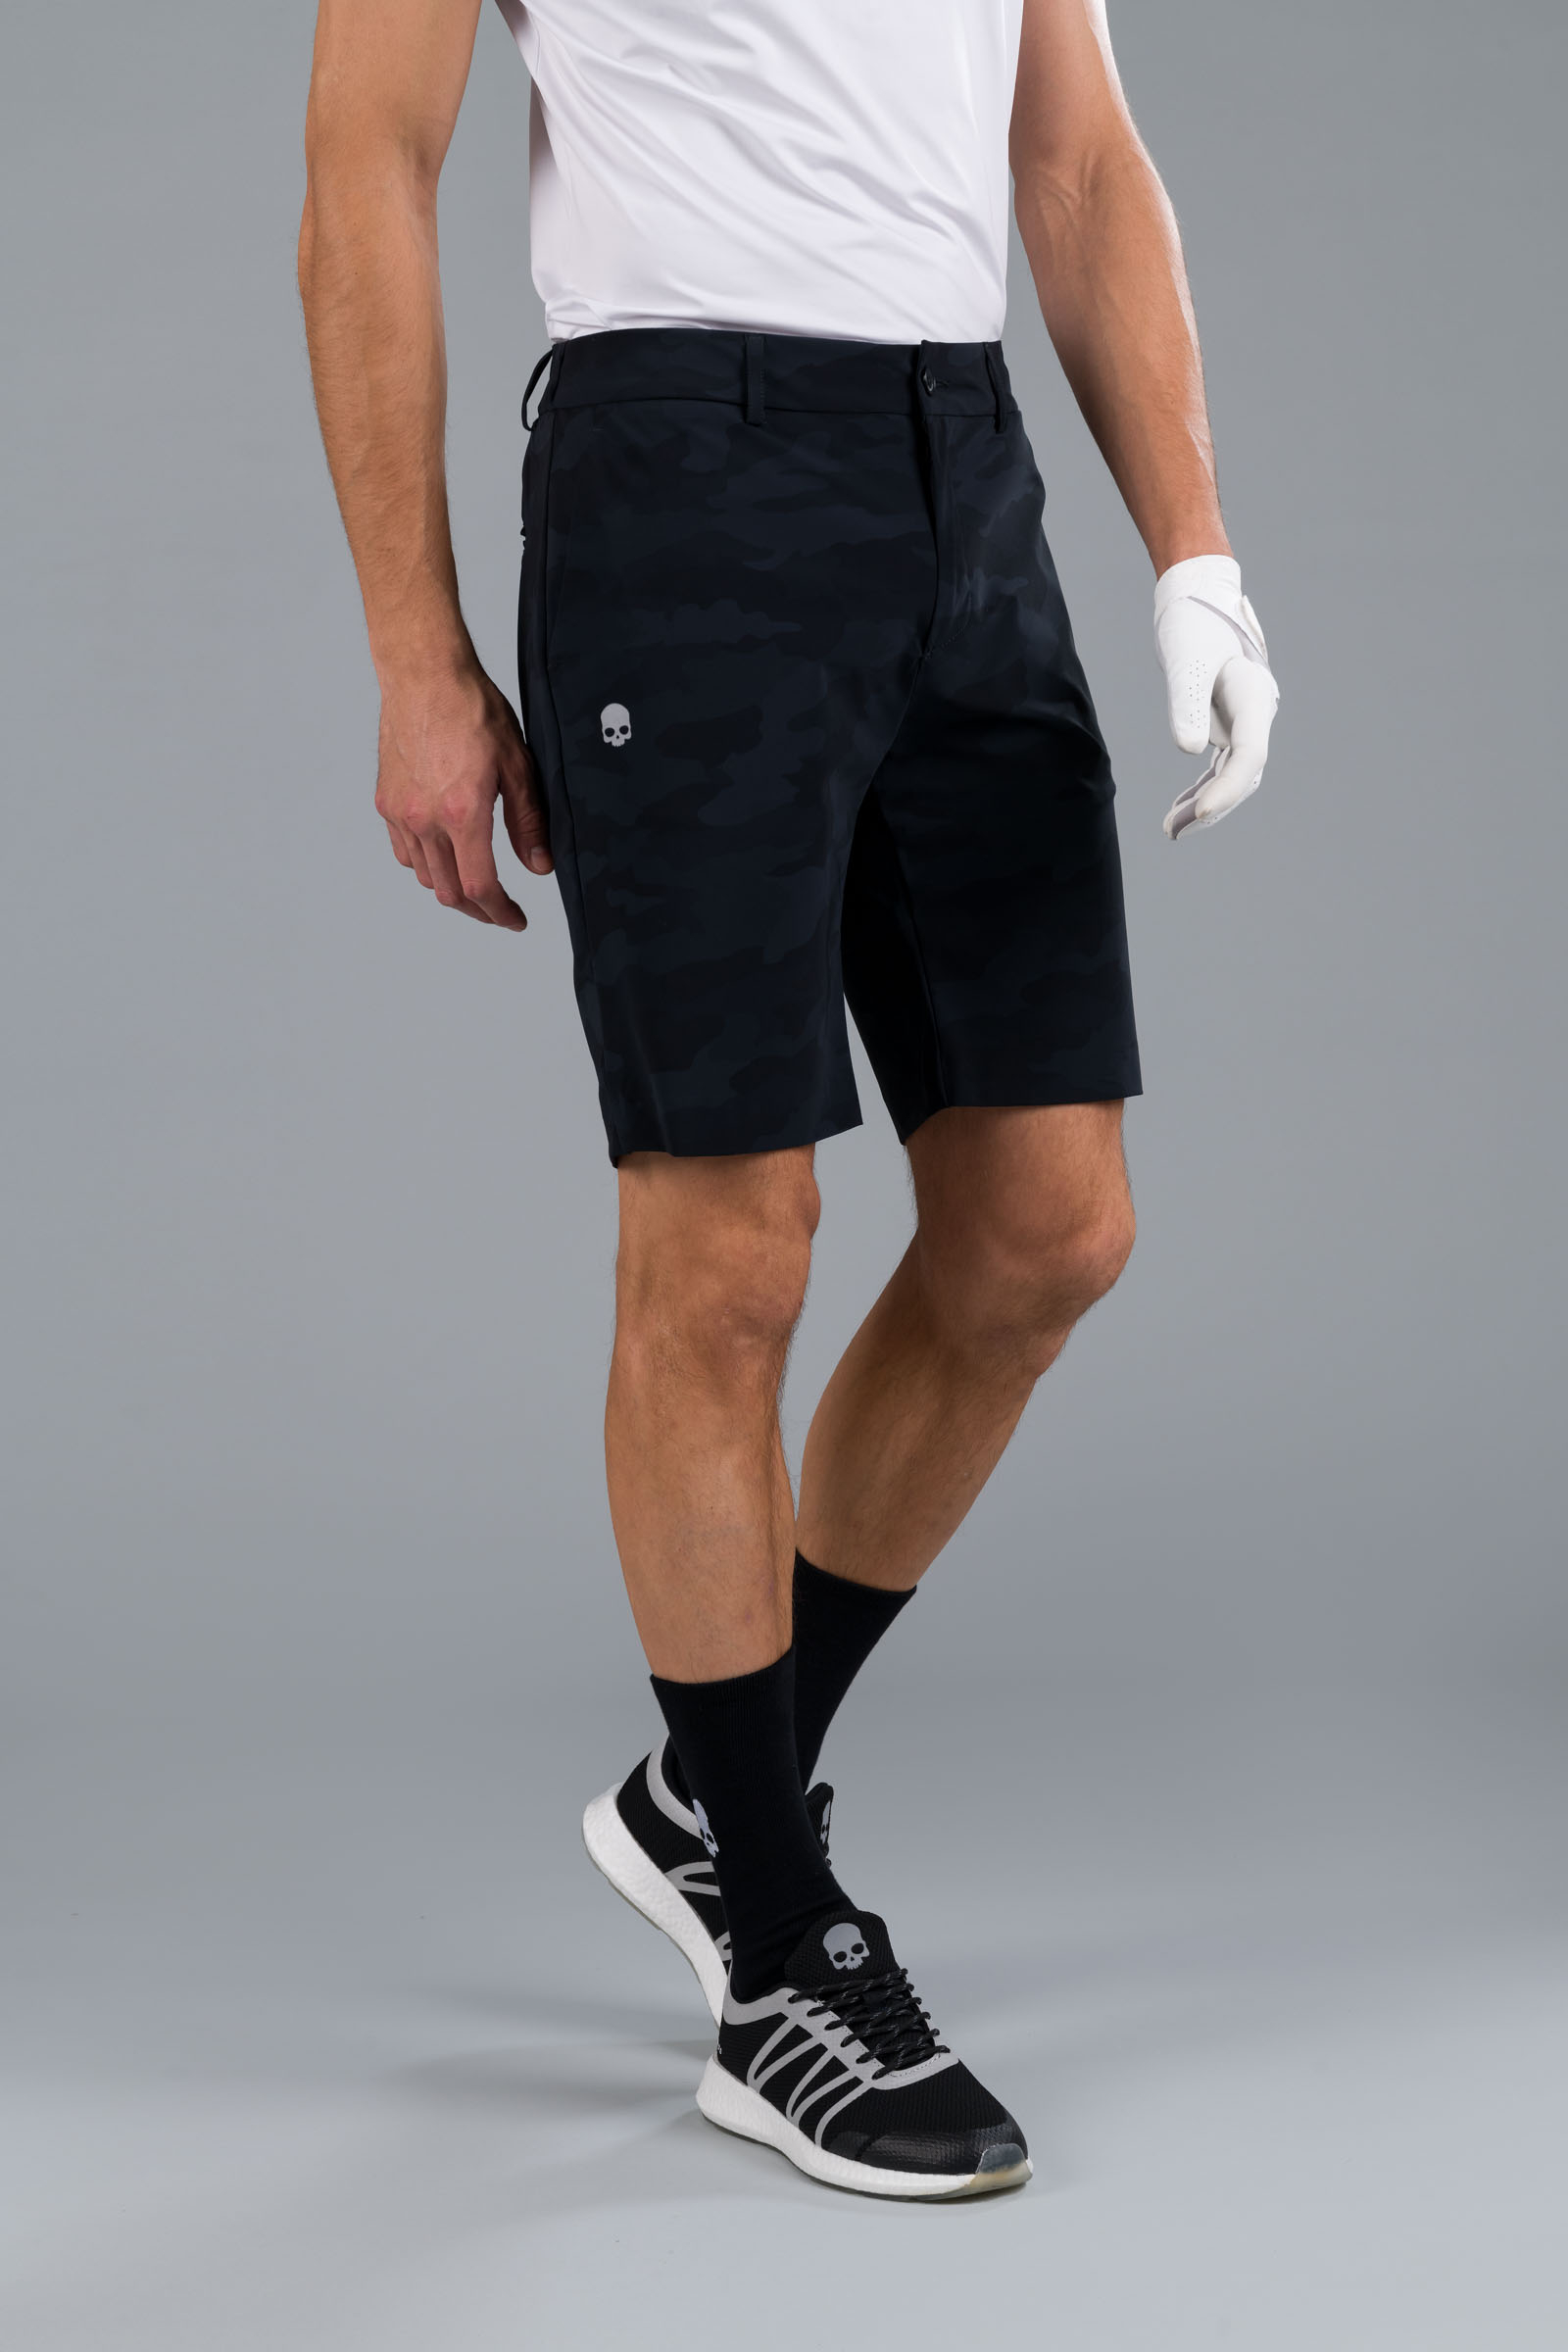 GOLF SHORTS - BLACK CAMOUFLAGE - Abbigliamento sportivo | Hydrogen